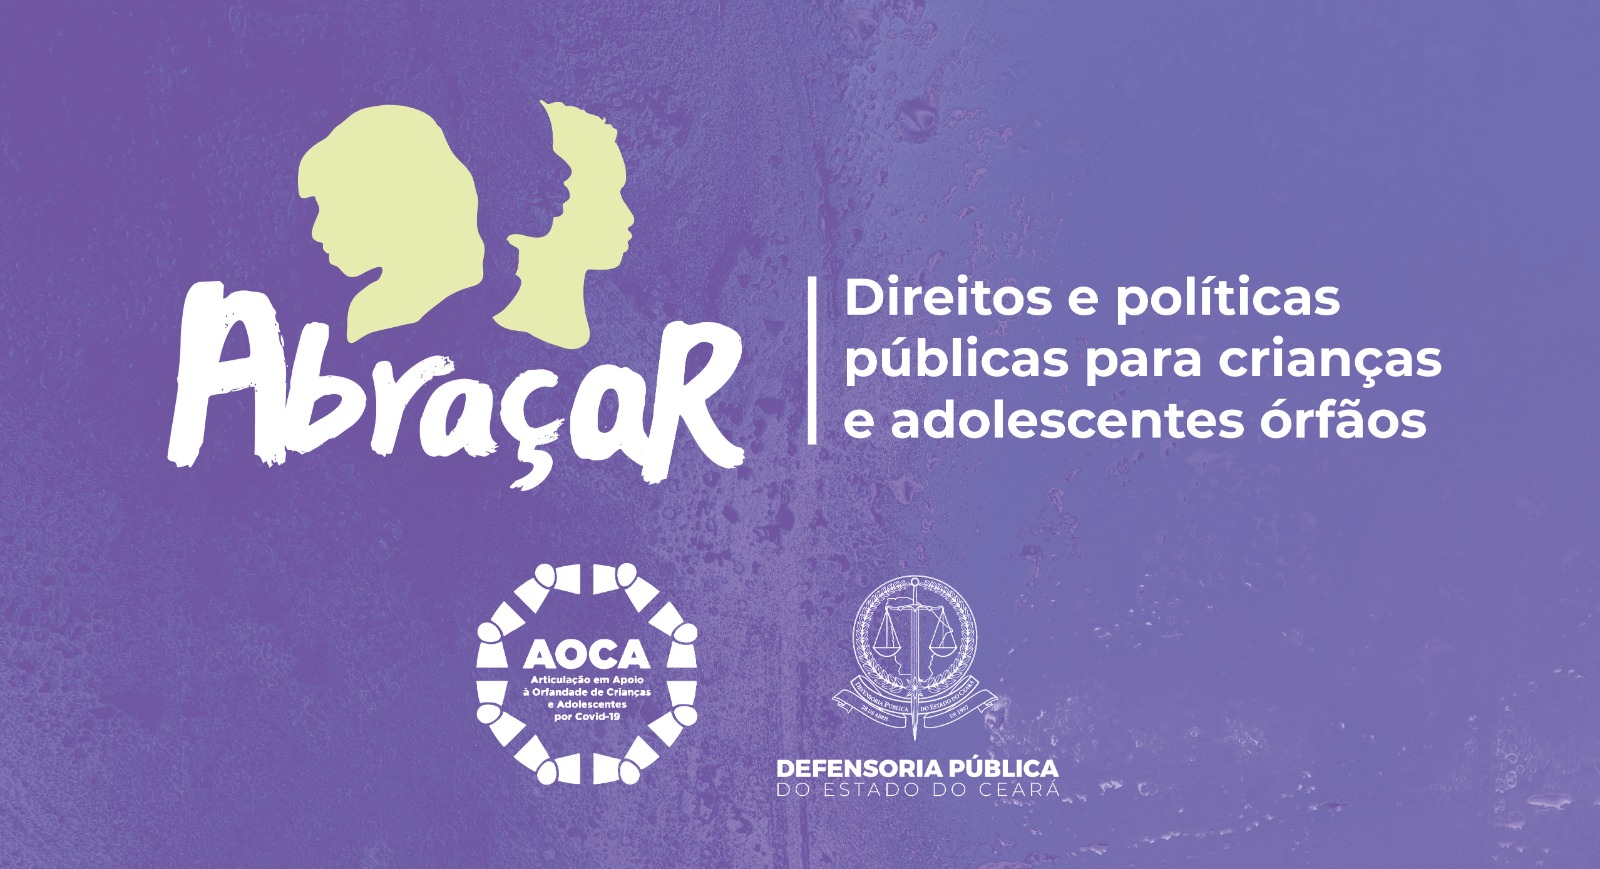 Defensoria e AOCA lançam campanha buscando alertar os problemas da orfandade de crianças e adolescentes